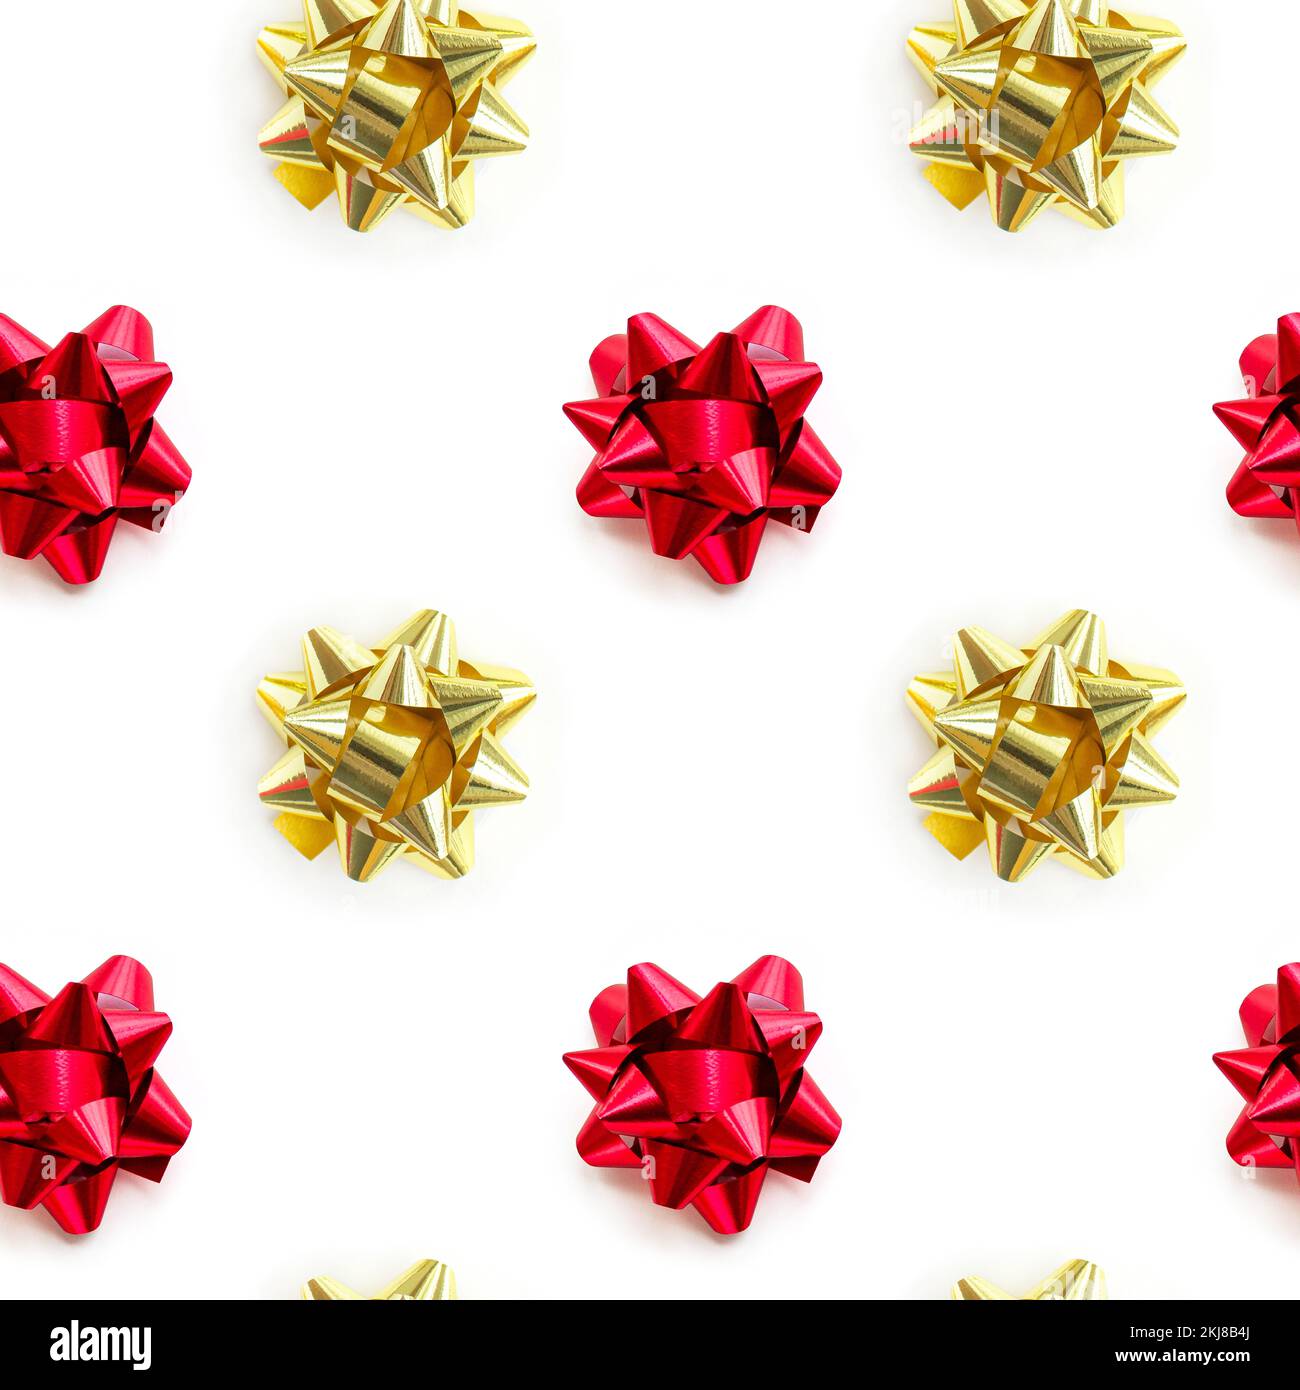 Oro natalizio e motivo a fiocco rosso su sfondo bianco. Composizione di disegno per carta da imballaggio, compleanno, natale o biglietto di auguri. Foto Stock